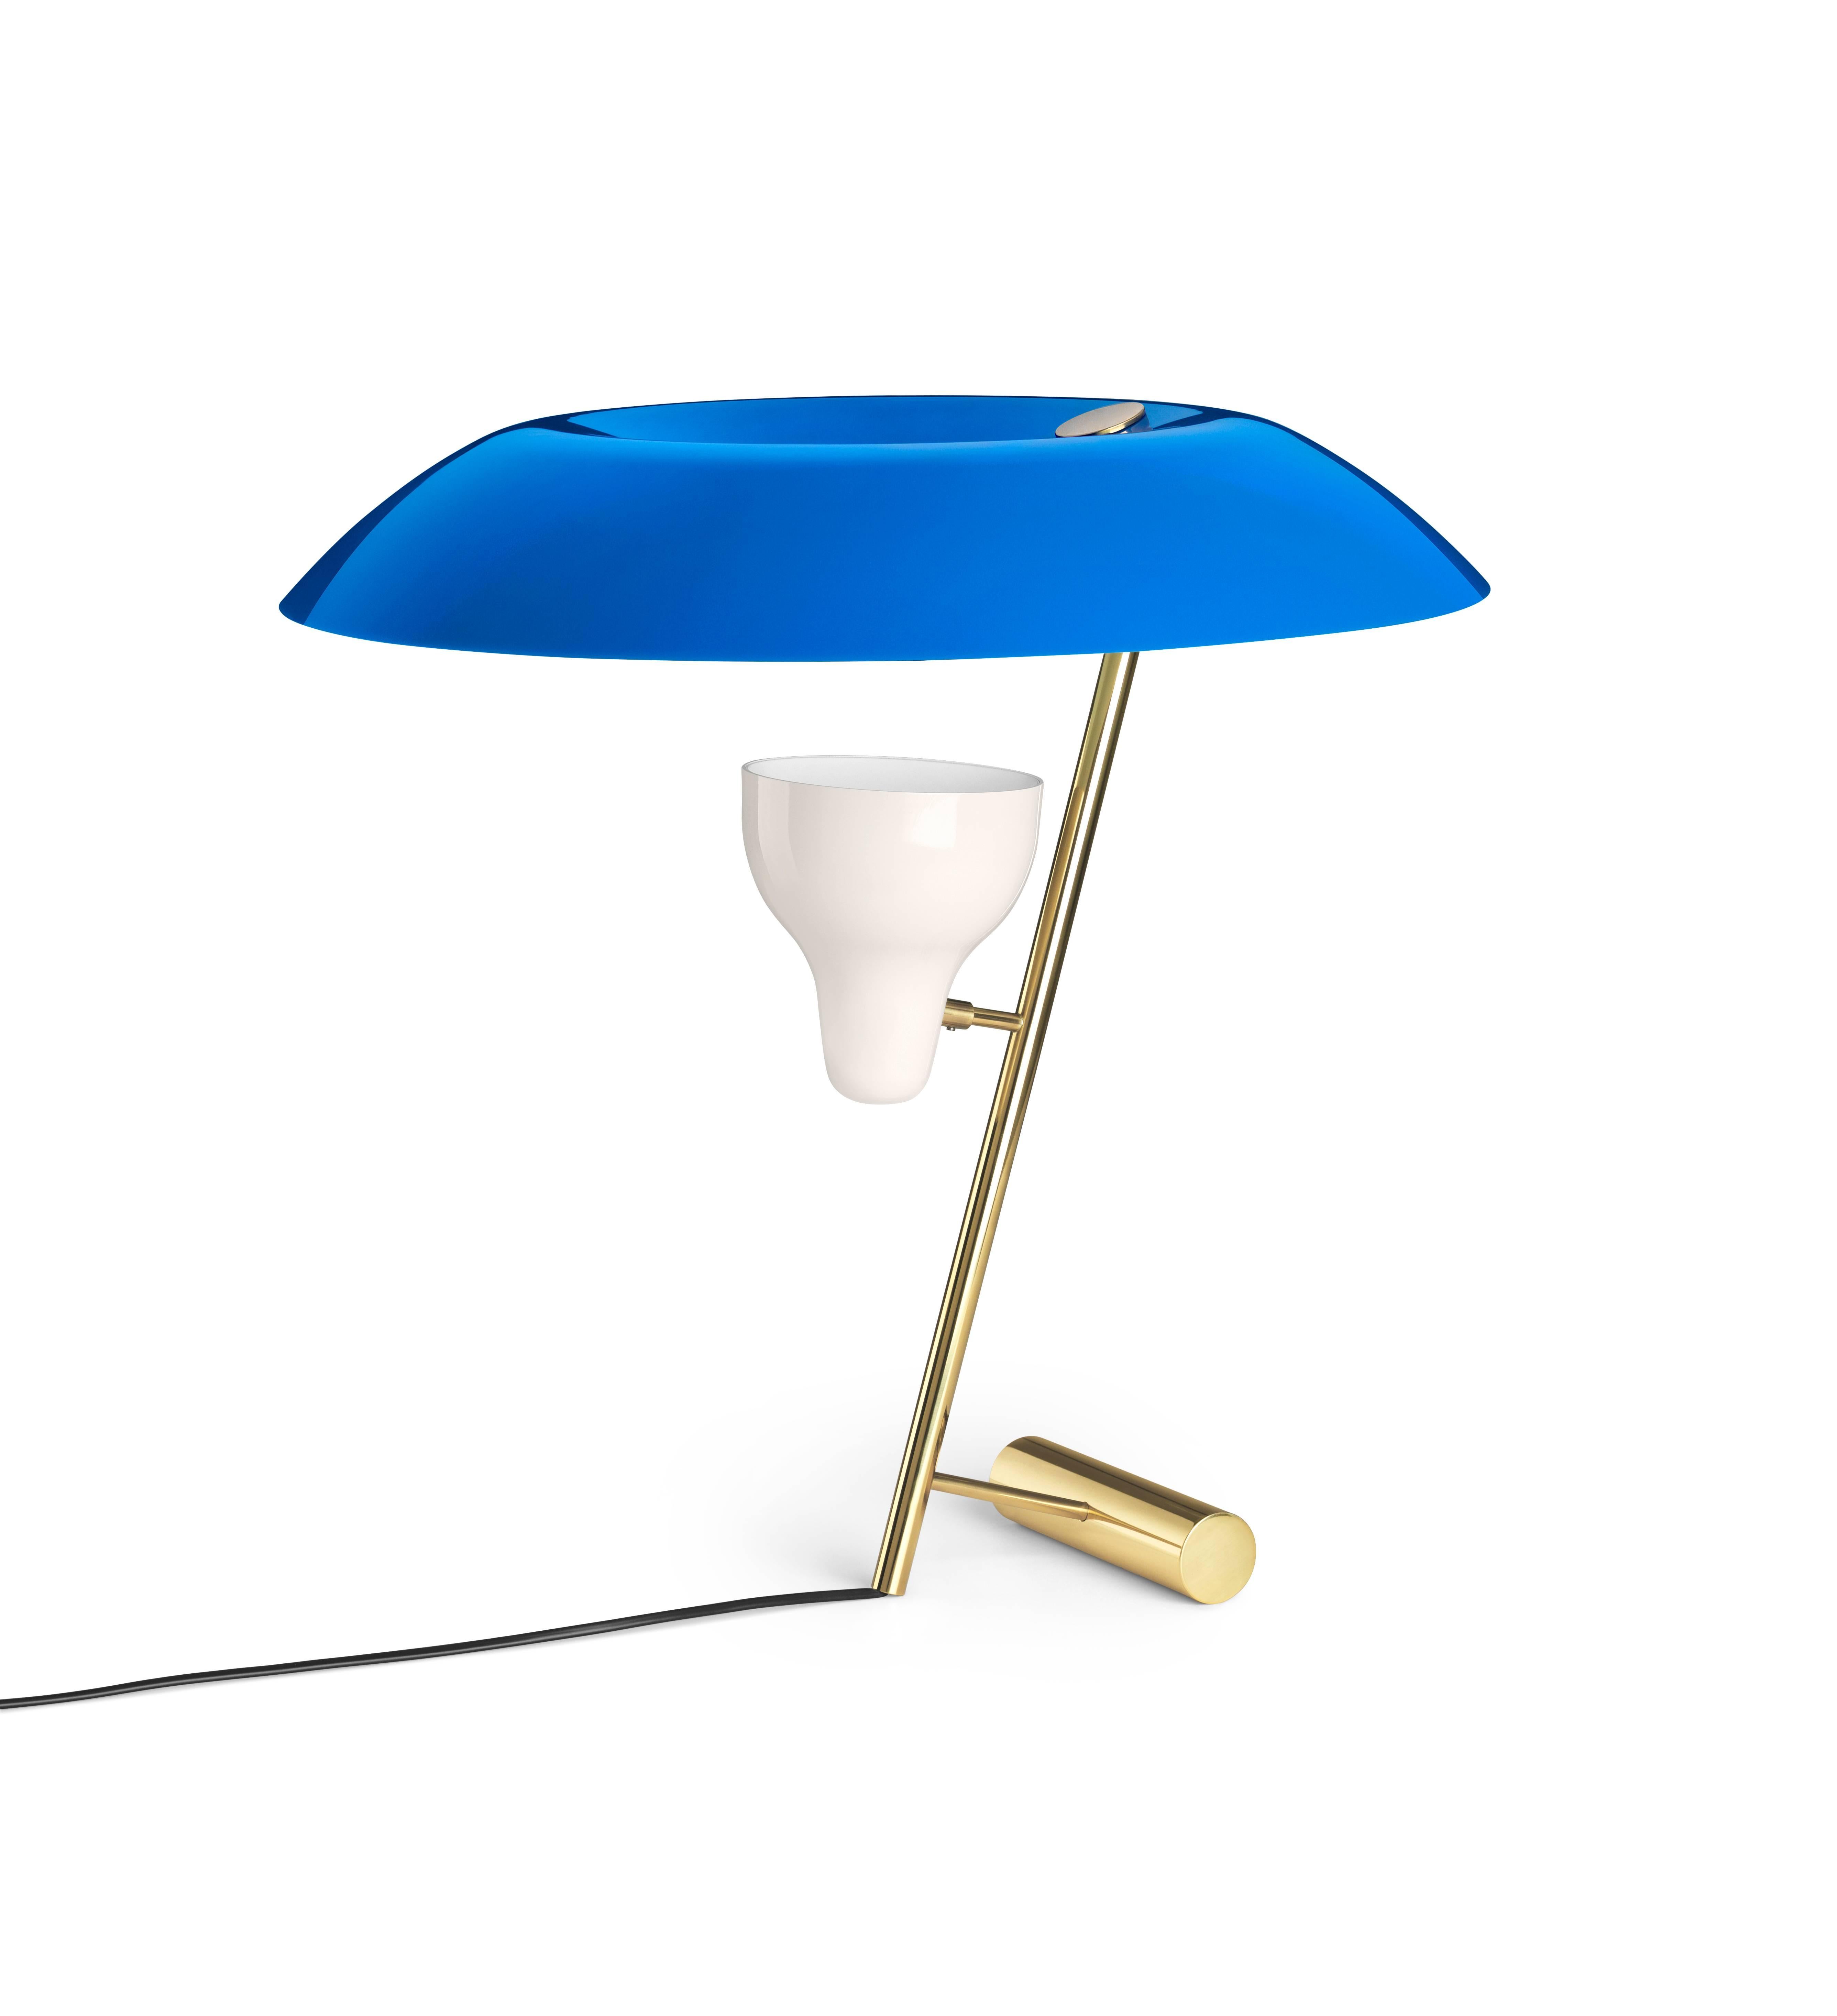 Lampe de table Gino Sarfatti modèle 548 en bleu et laiton poli. 

Conçue en 1951, cette réédition autorisée a été réalisée par Alessandro Sarfatti, petit-fils de Gino Sarfatti, qui applique l'attention scrupuleuse de son grand-père aux détails et